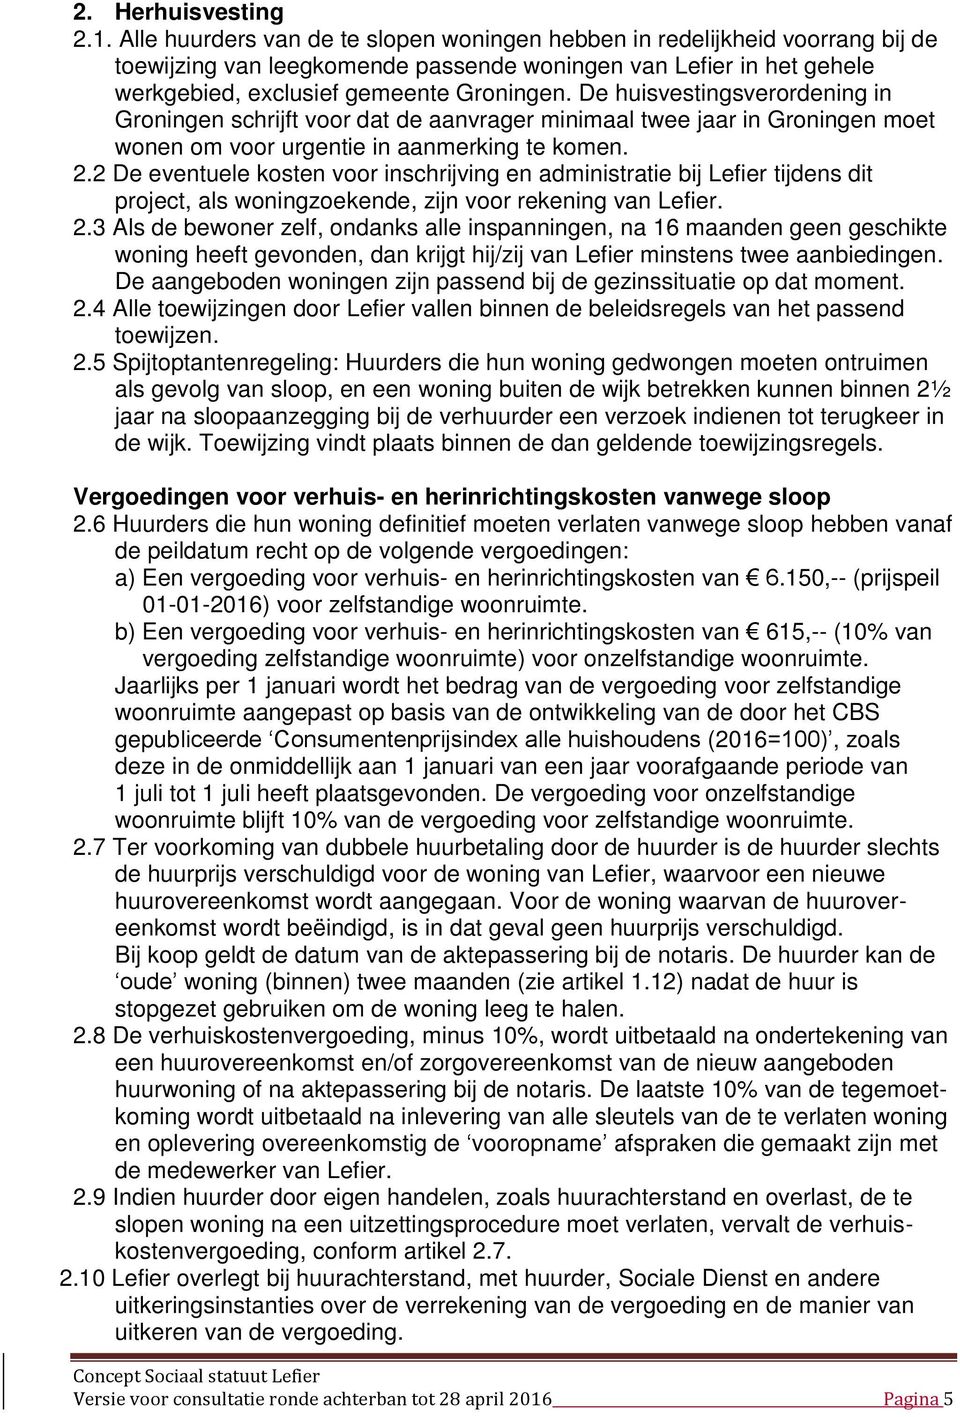 De huisvestingsverordening in Groningen schrijft voor dat de aanvrager minimaal twee jaar in Groningen moet wonen om voor urgentie in aanmerking te komen. 2.